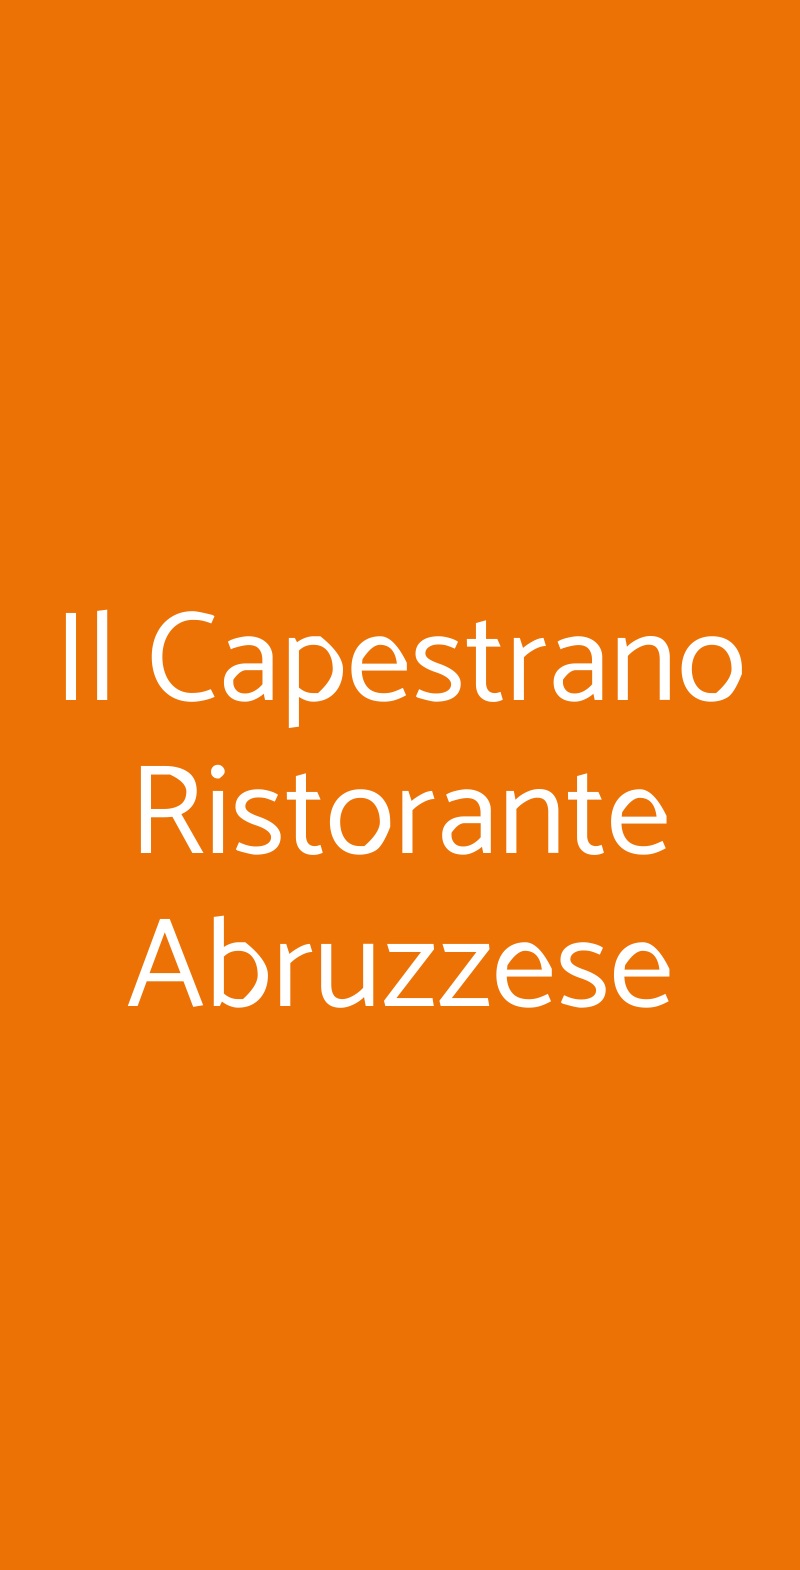 Il Capestrano Ristorante Abruzzese Milano menù 1 pagina